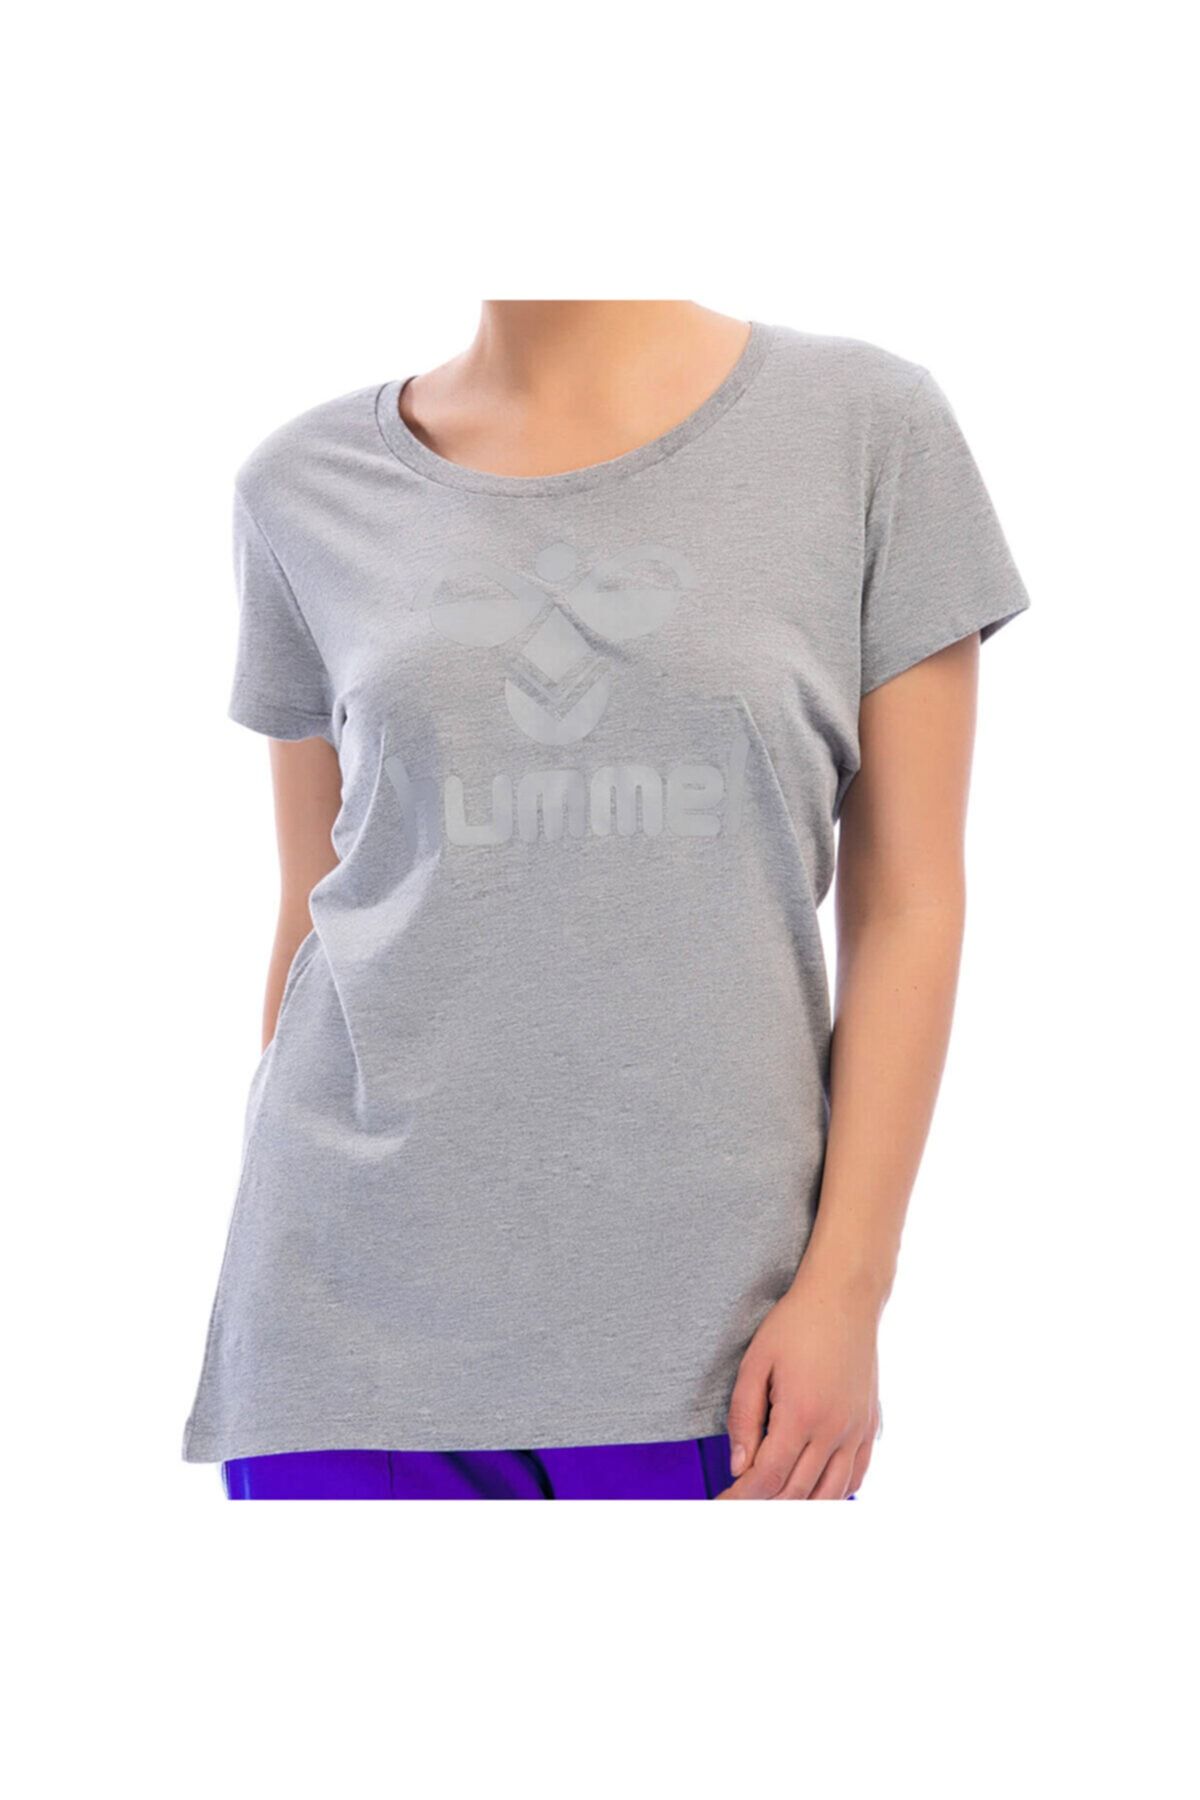 hummel Hmlsılma T-shırt S/s Gri Kadın Kısa Kol Tişört